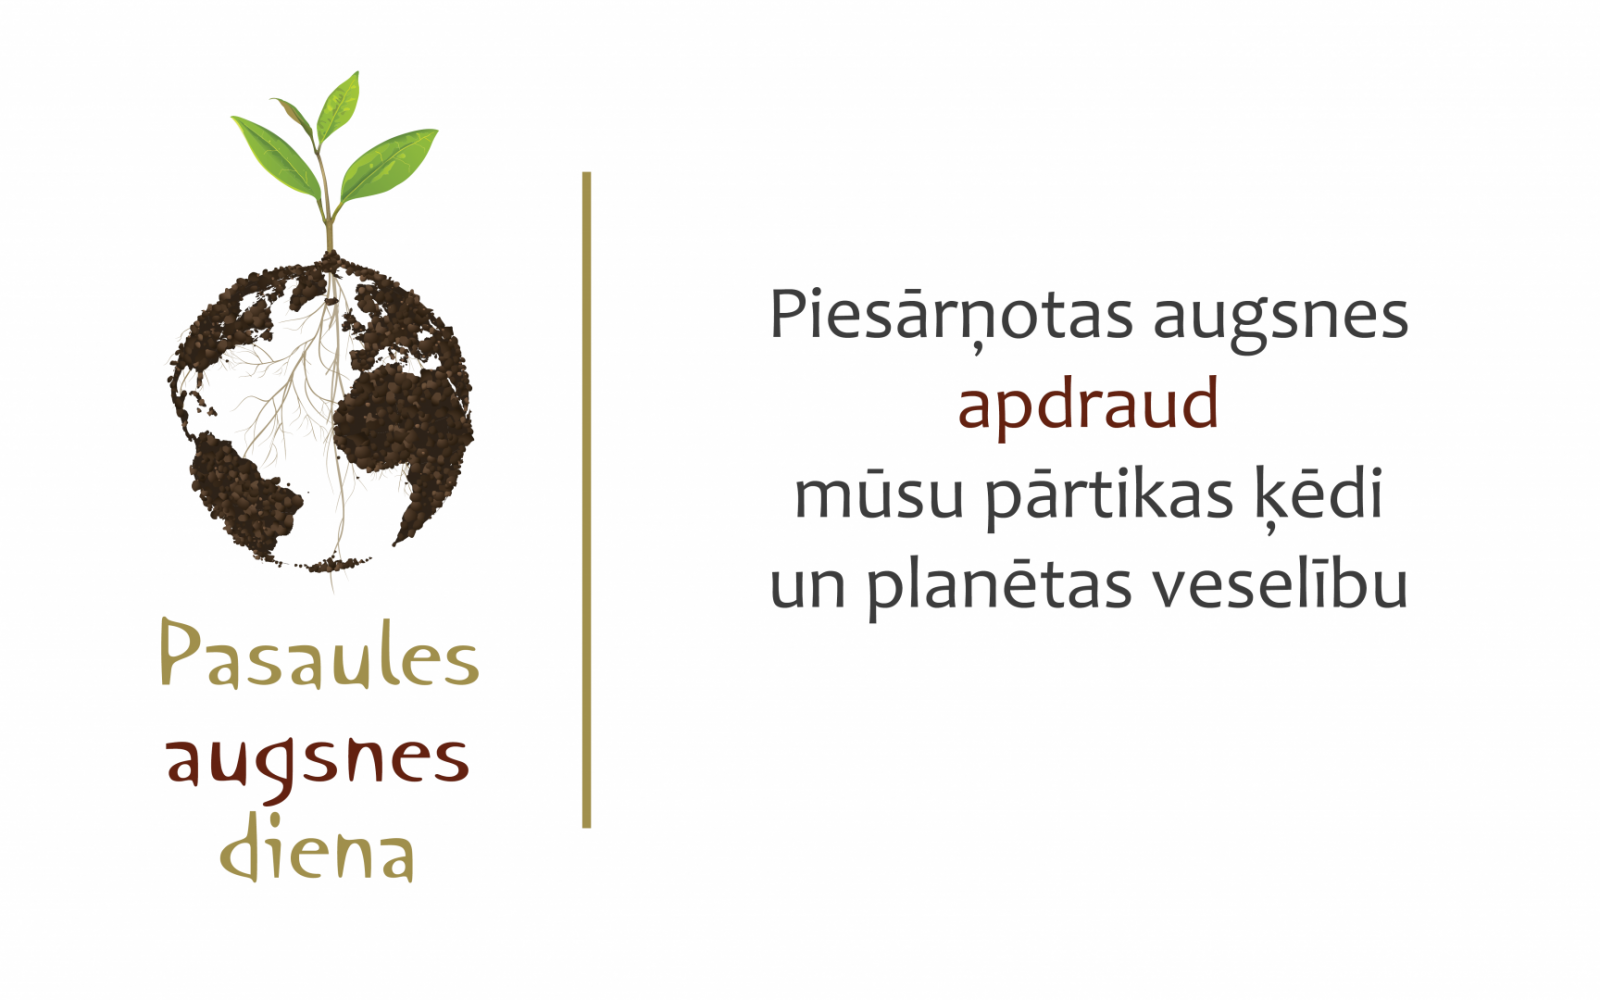 Pasaules augsnes dienas logo un tēze